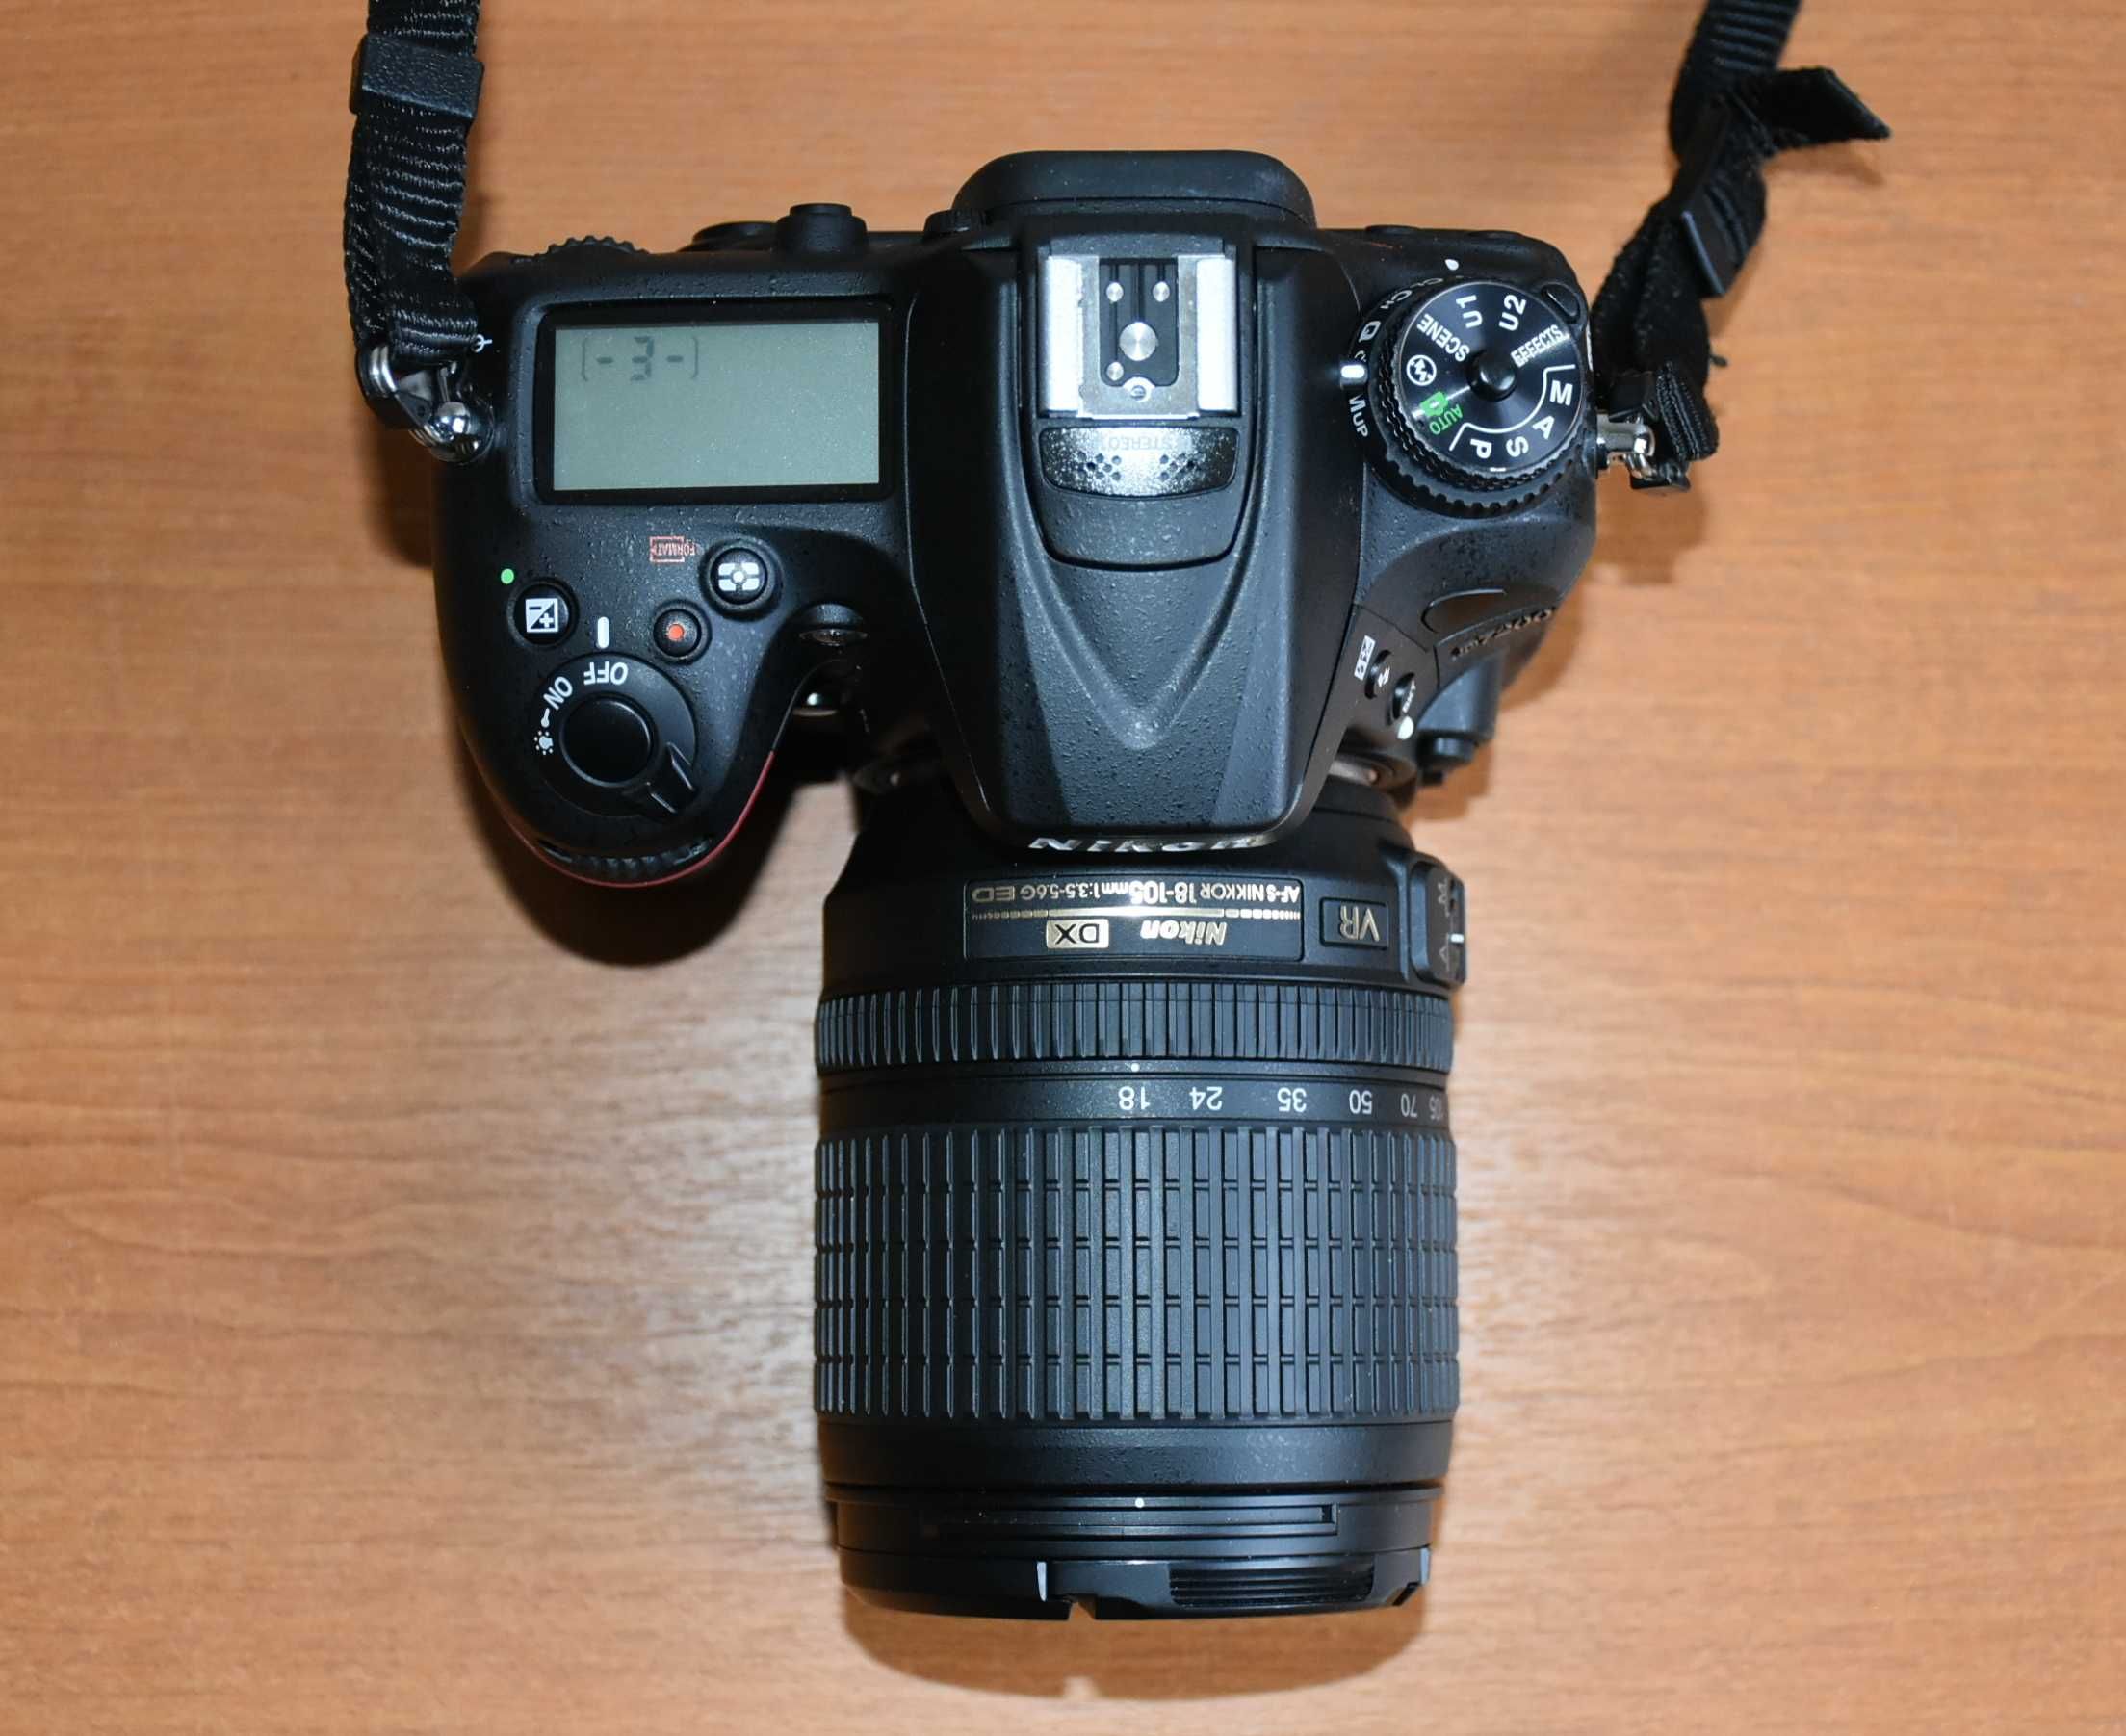 Nikon D7200 + 18-105VR+Torba + ZESTAW FABRYCZNY - 1000 ZDJĘĆ - IDEALNY